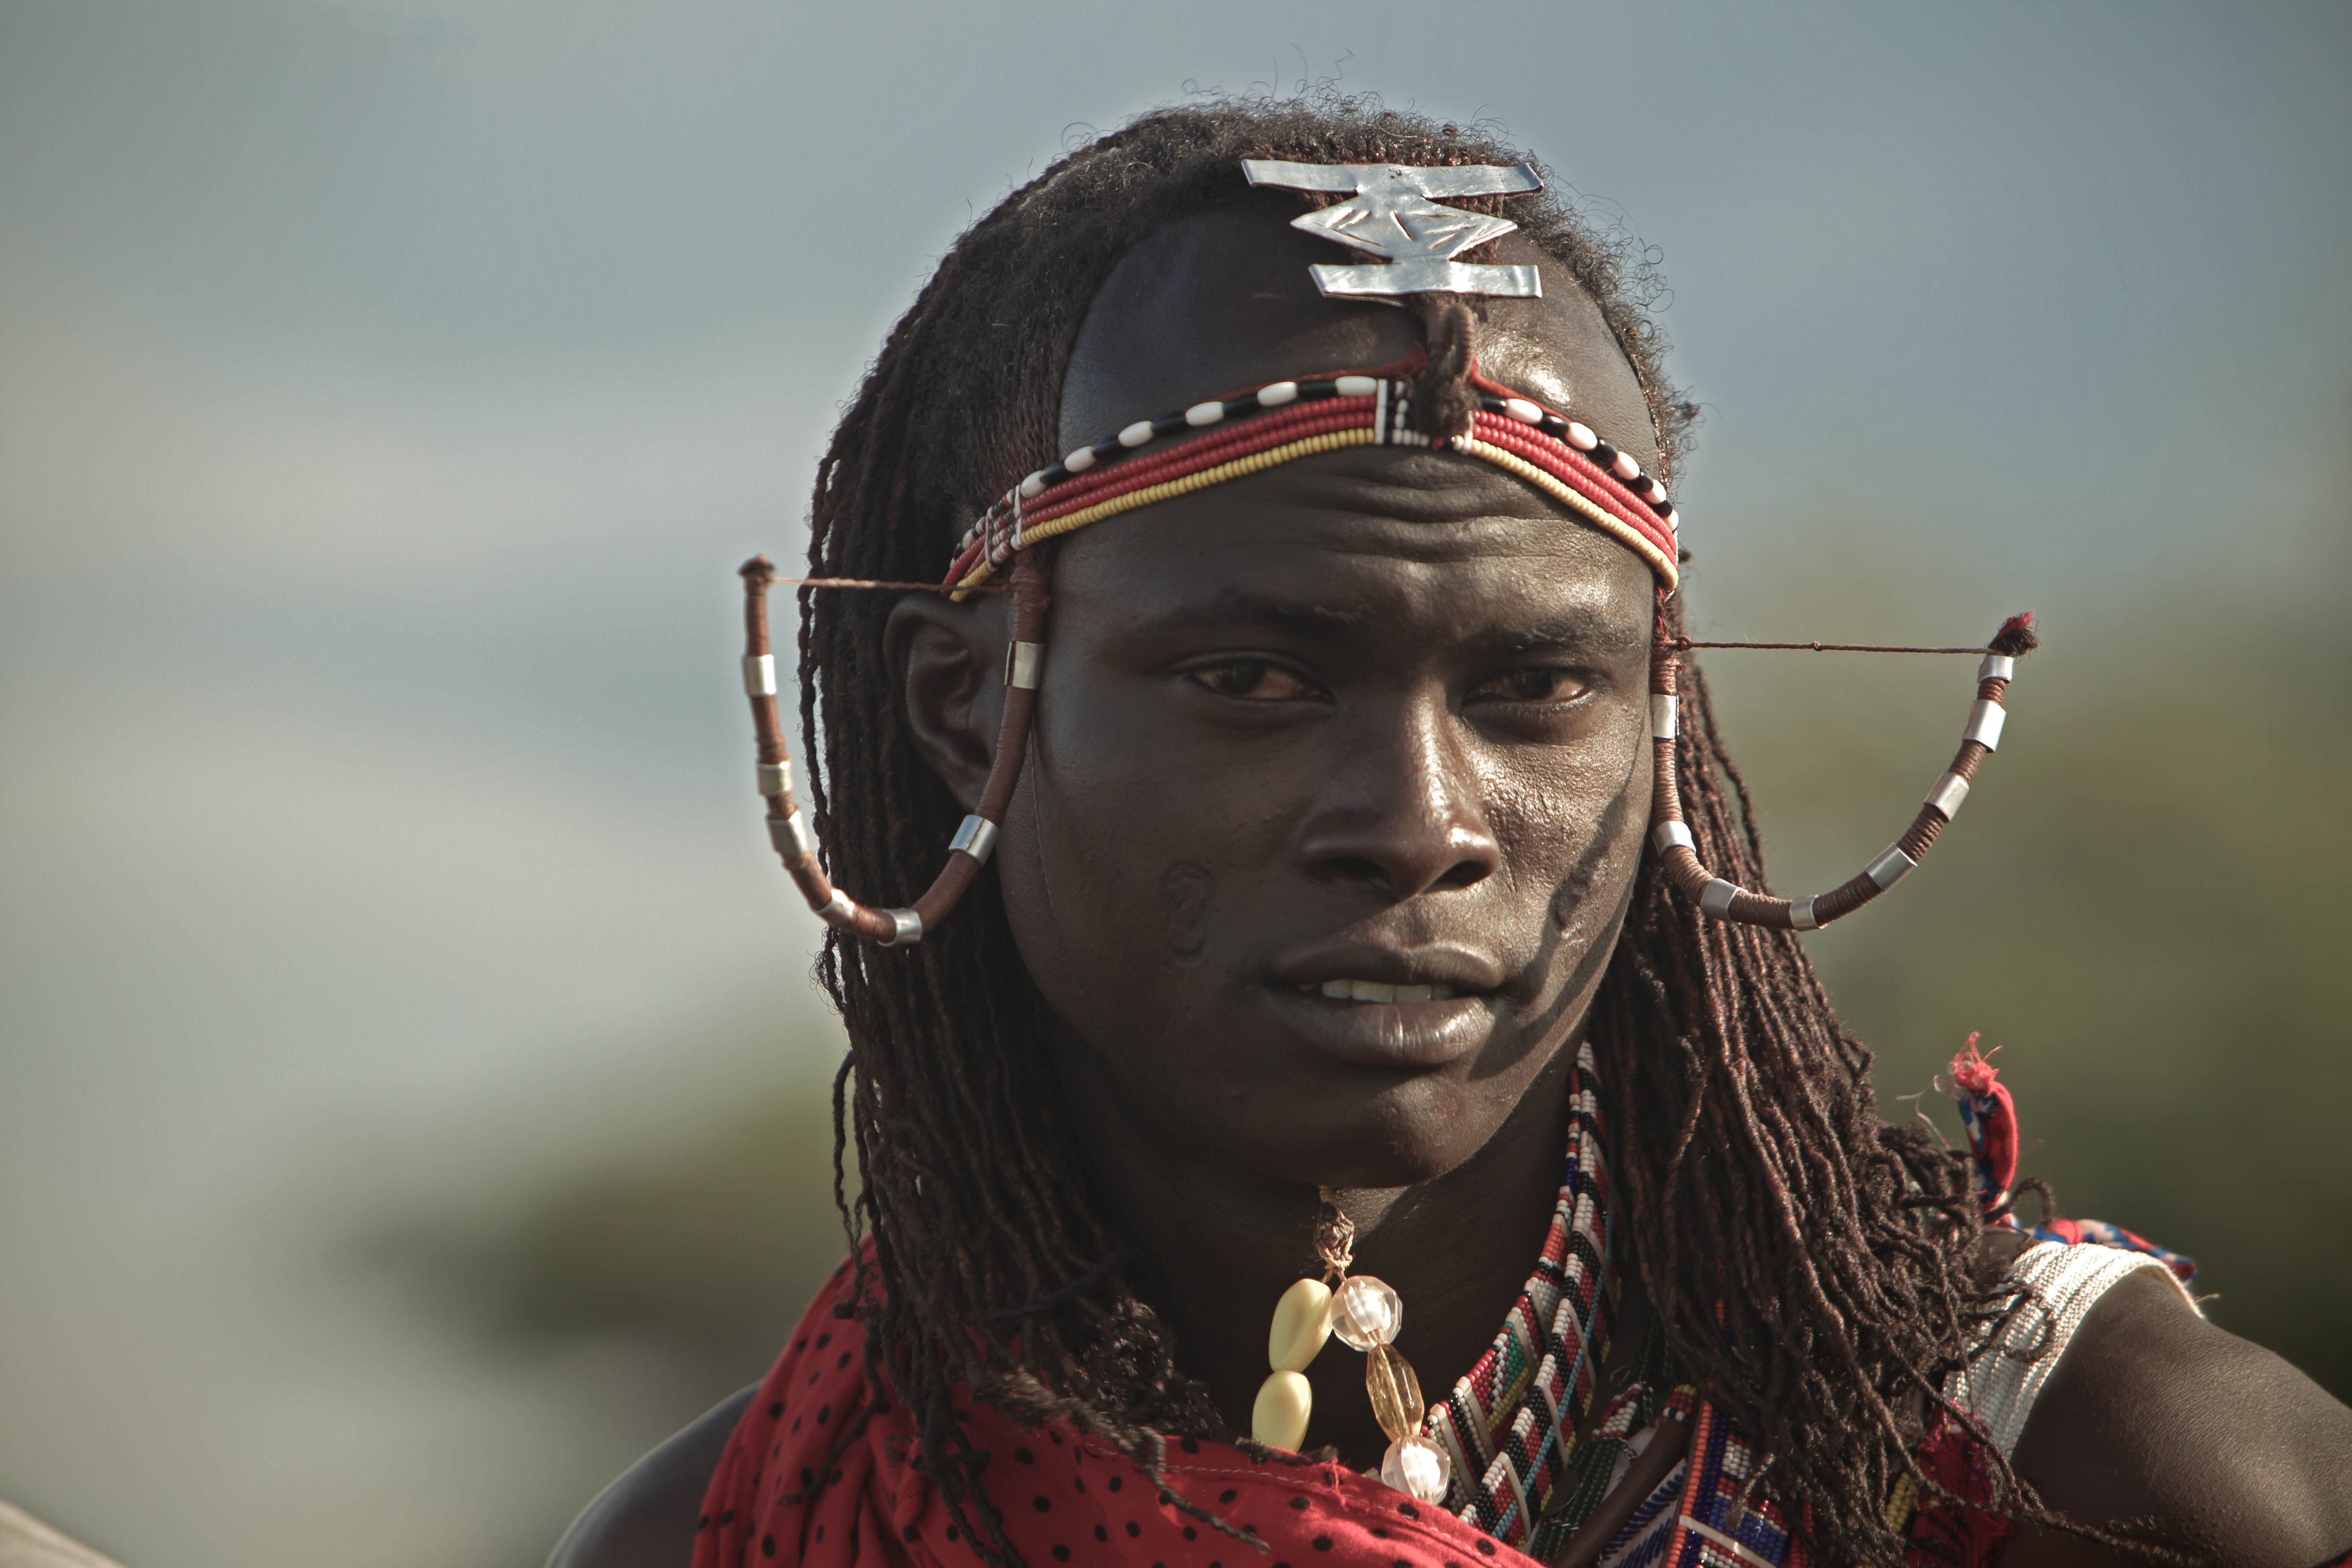 A Maasai warrior.